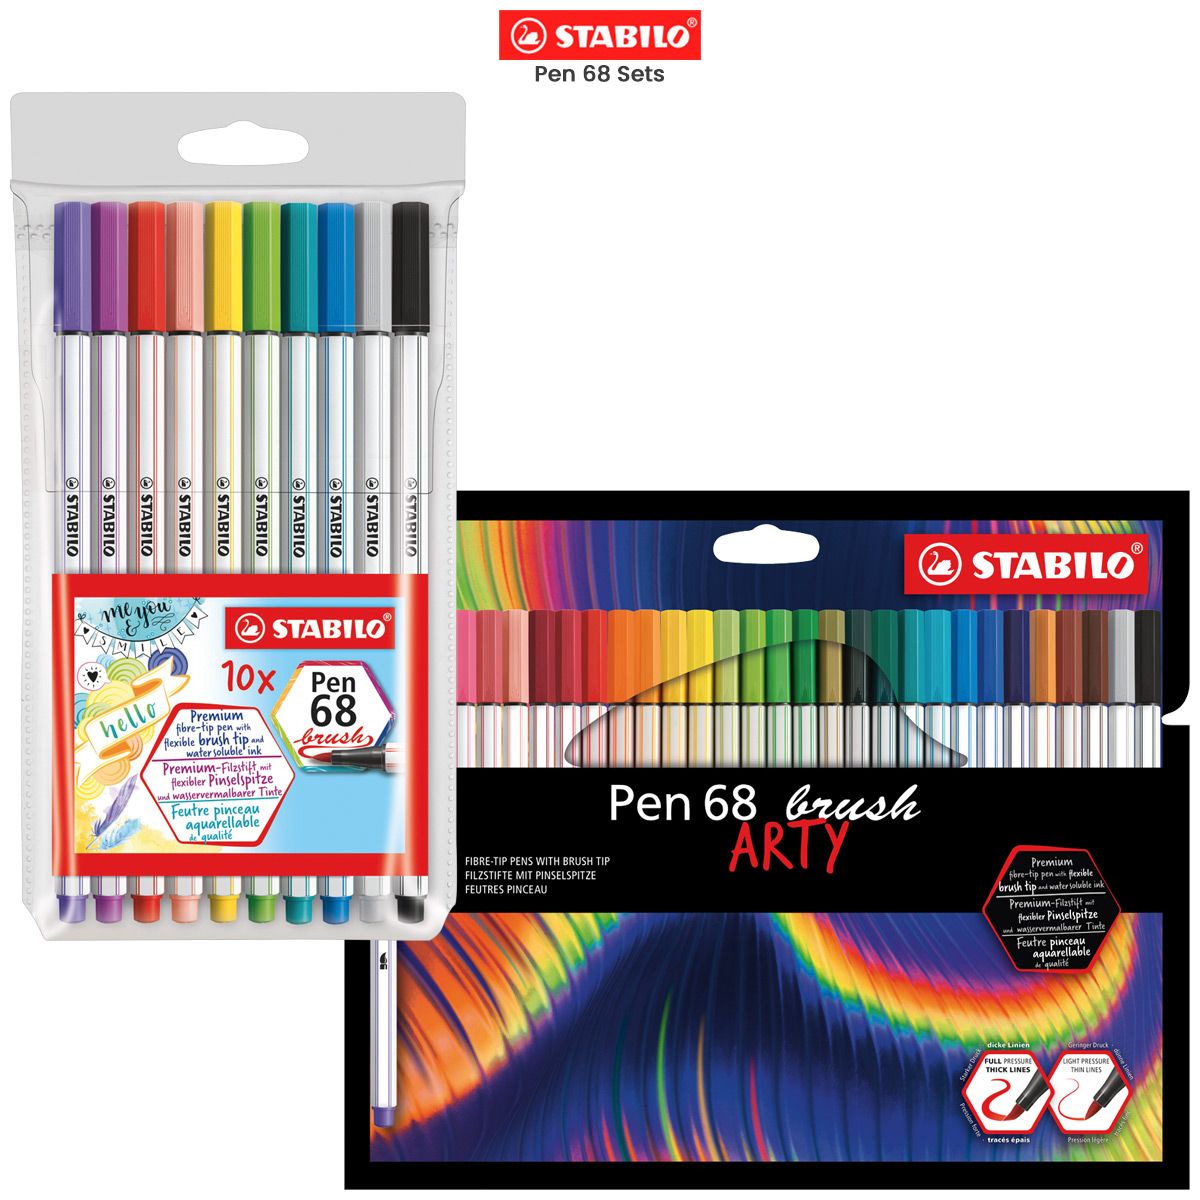 STABILO Pen 68 Brush Marker, Black